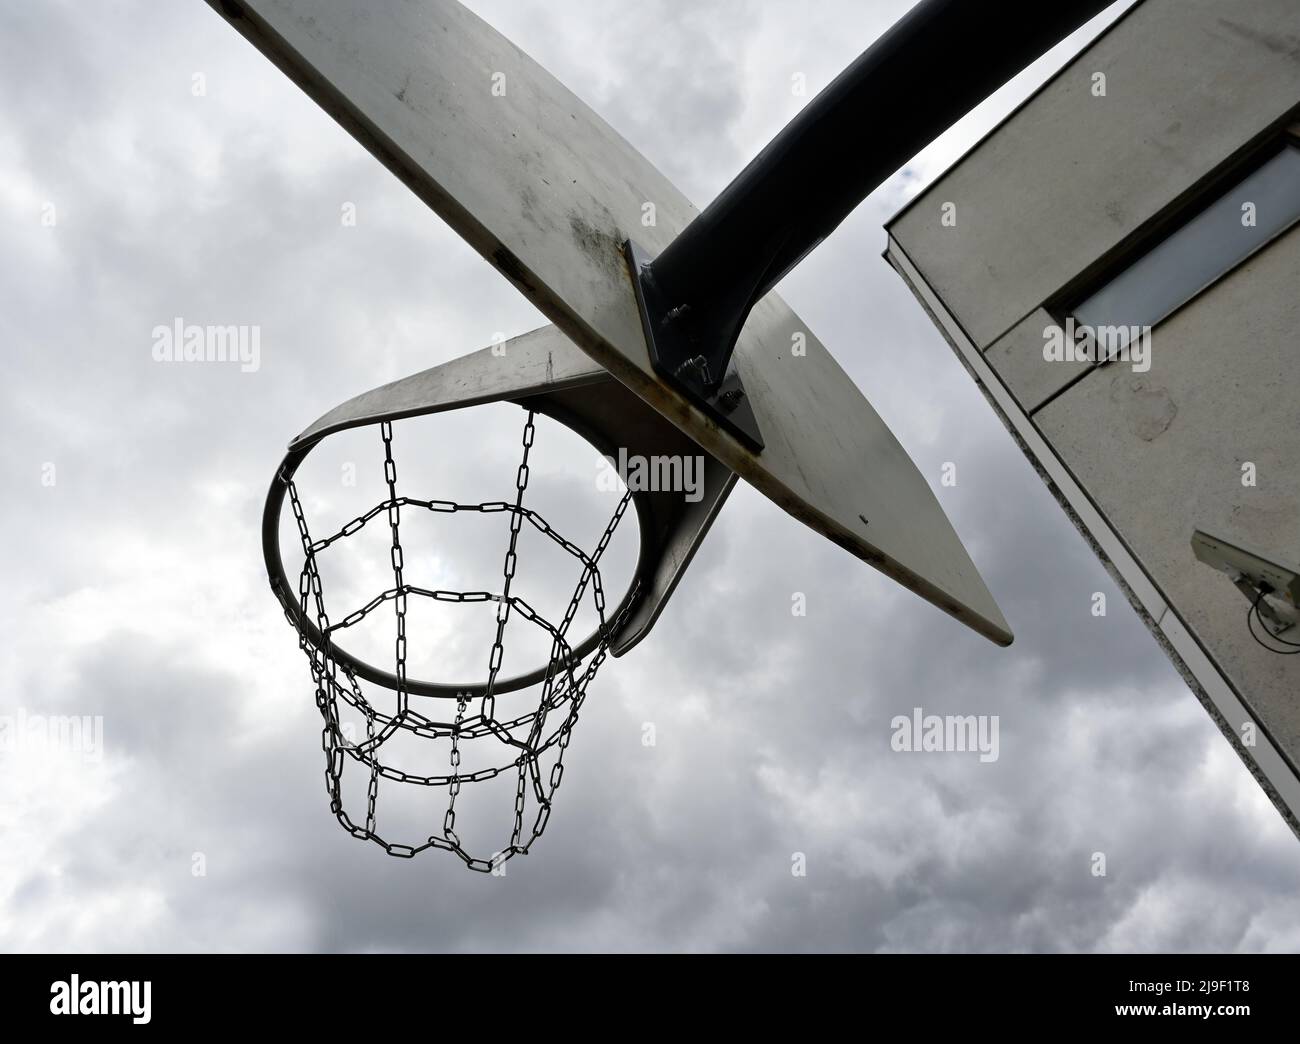 Ein vandalismussicherer Basketballkorb mit eisernen Ketten vor einem düsteren bewölkten Himmel, neben einem Betongebäude mit einer Überwachungskamera an der Wand Stockfoto